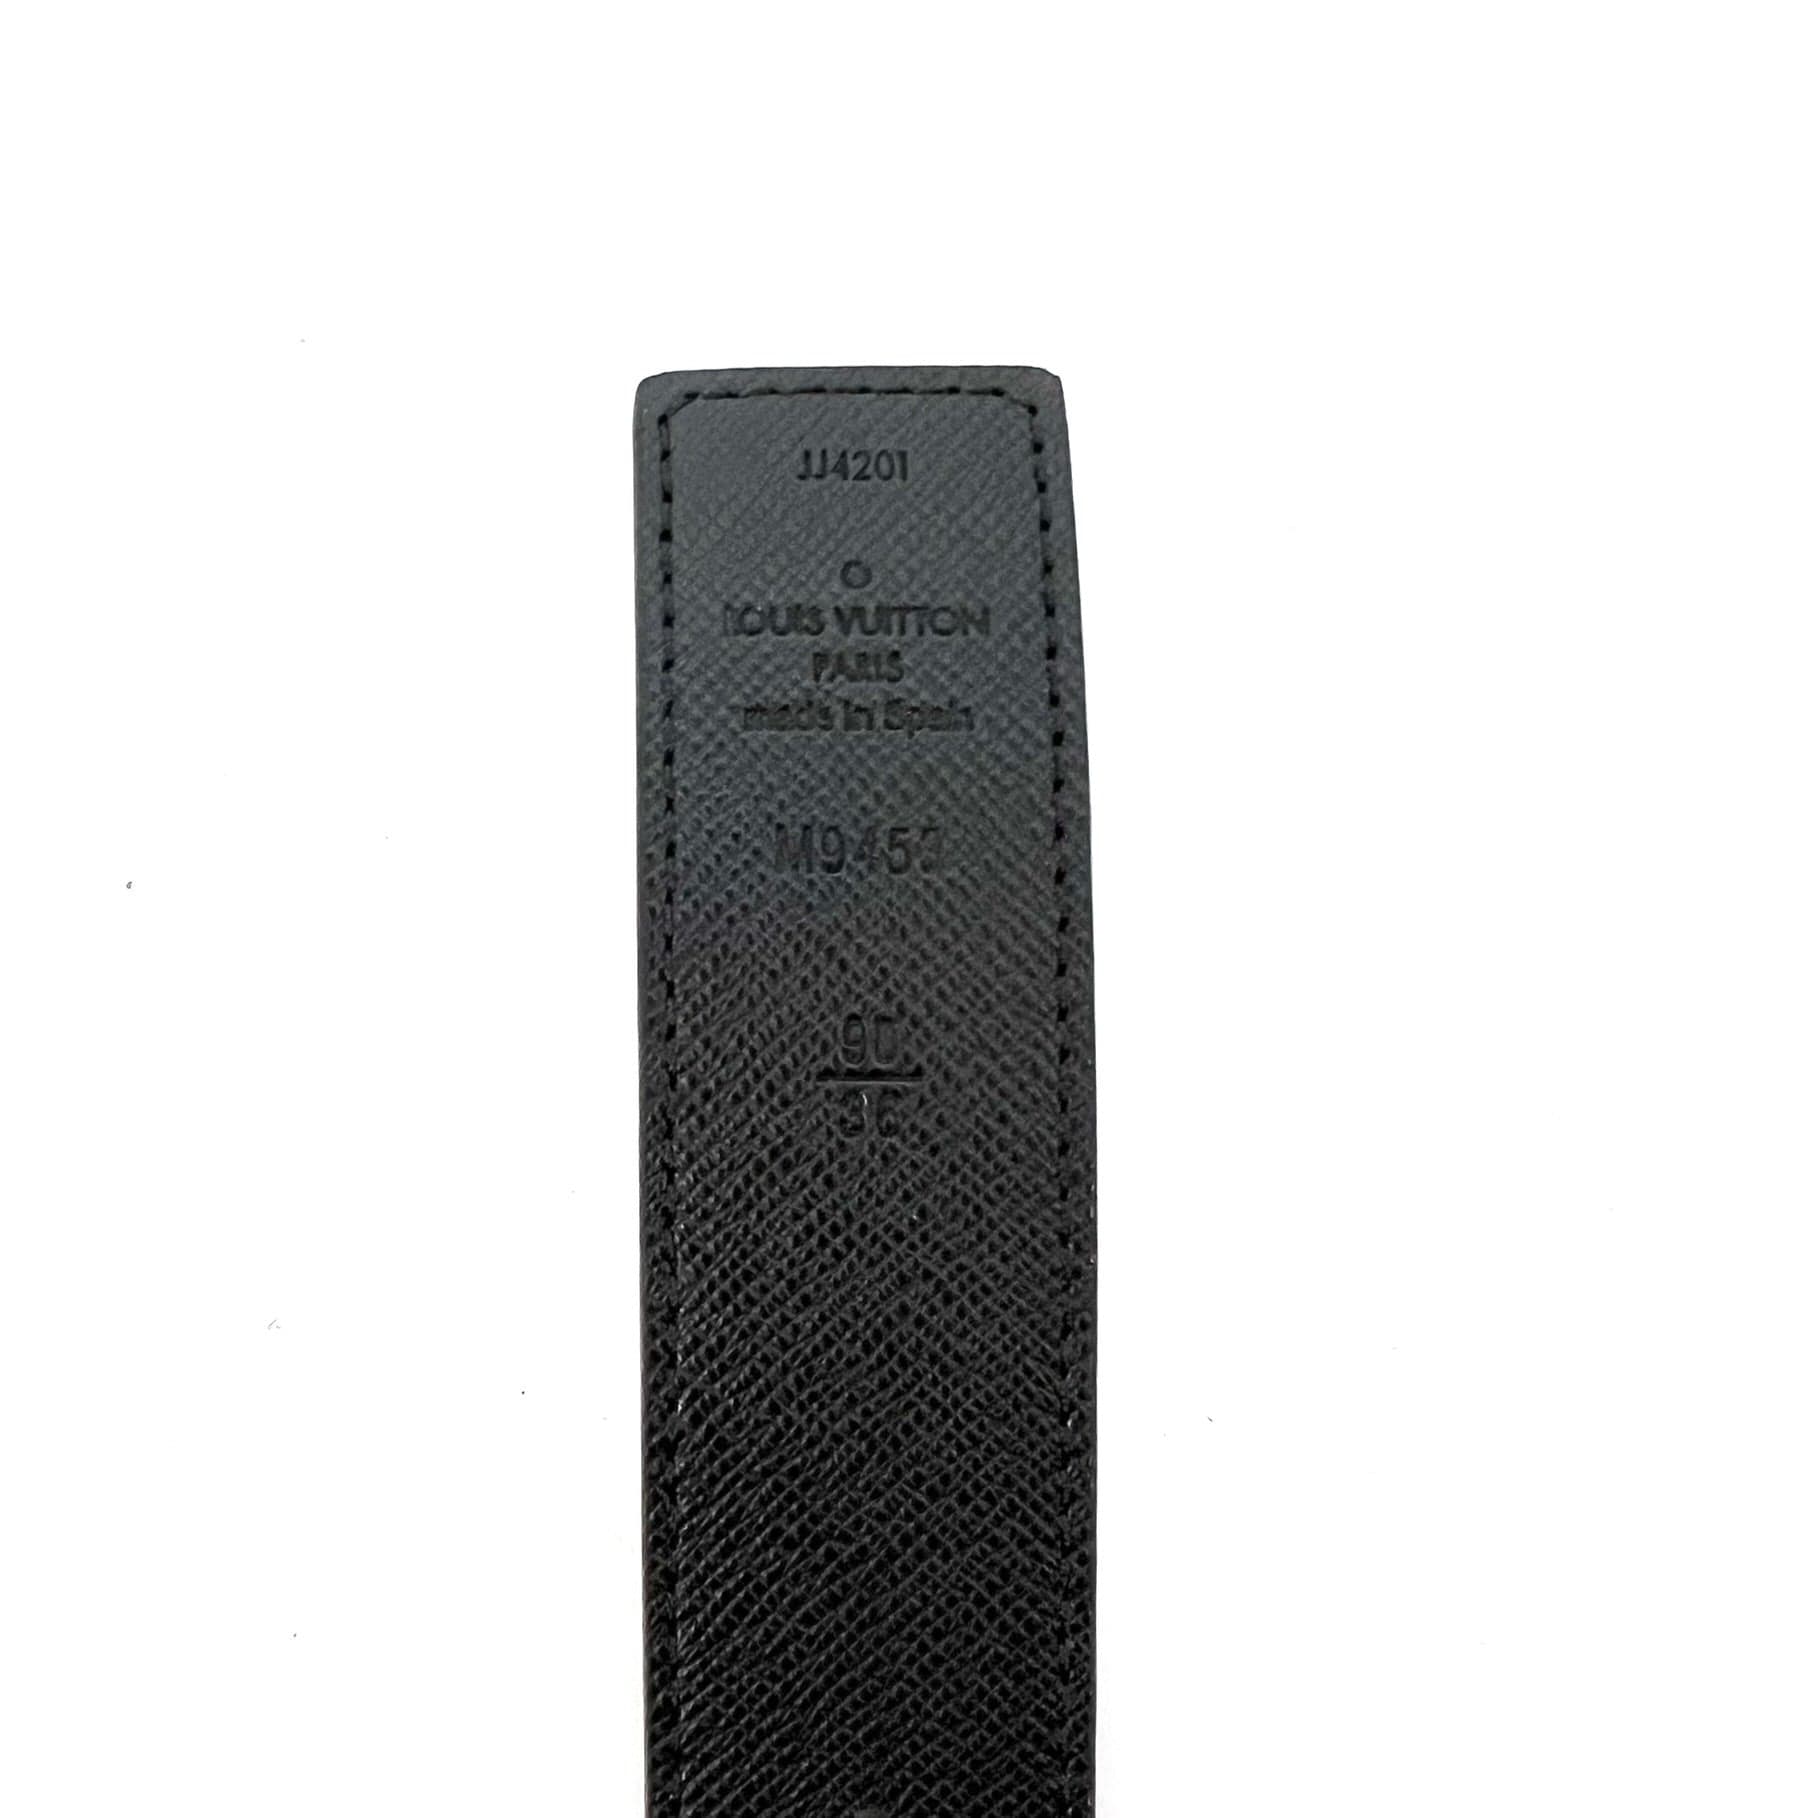 Louis Vuitton 90/36 Monogram Reversible Inventeur Belt